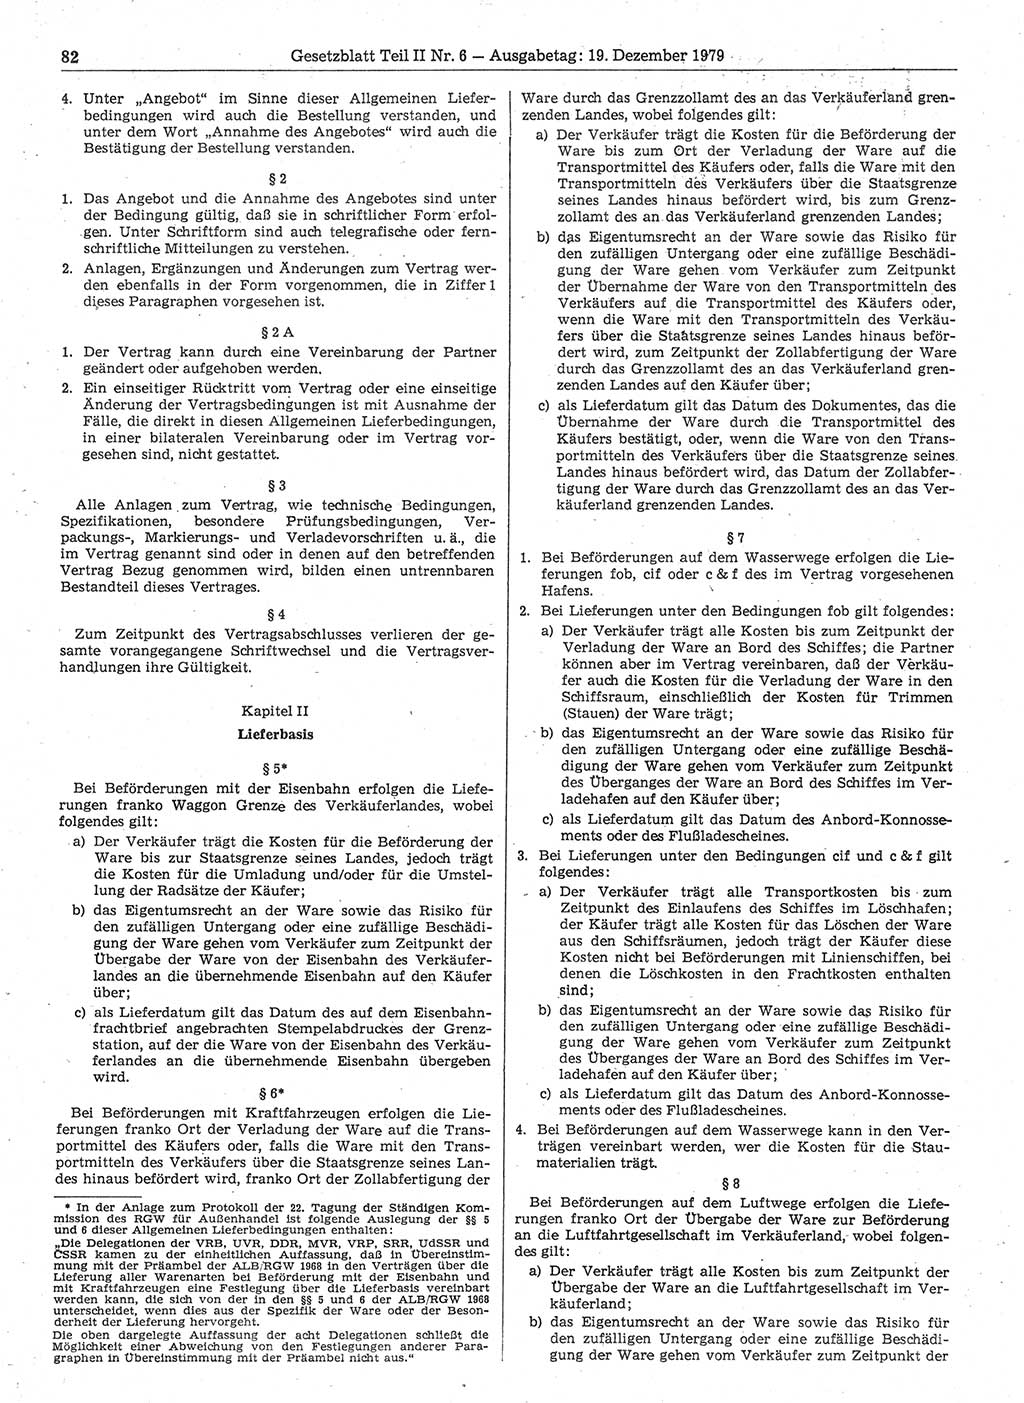 Gesetzblatt (GBl.) der Deutschen Demokratischen Republik (DDR) Teil ⅠⅠ 1979, Seite 82 (GBl. DDR ⅠⅠ 1979, S. 82)